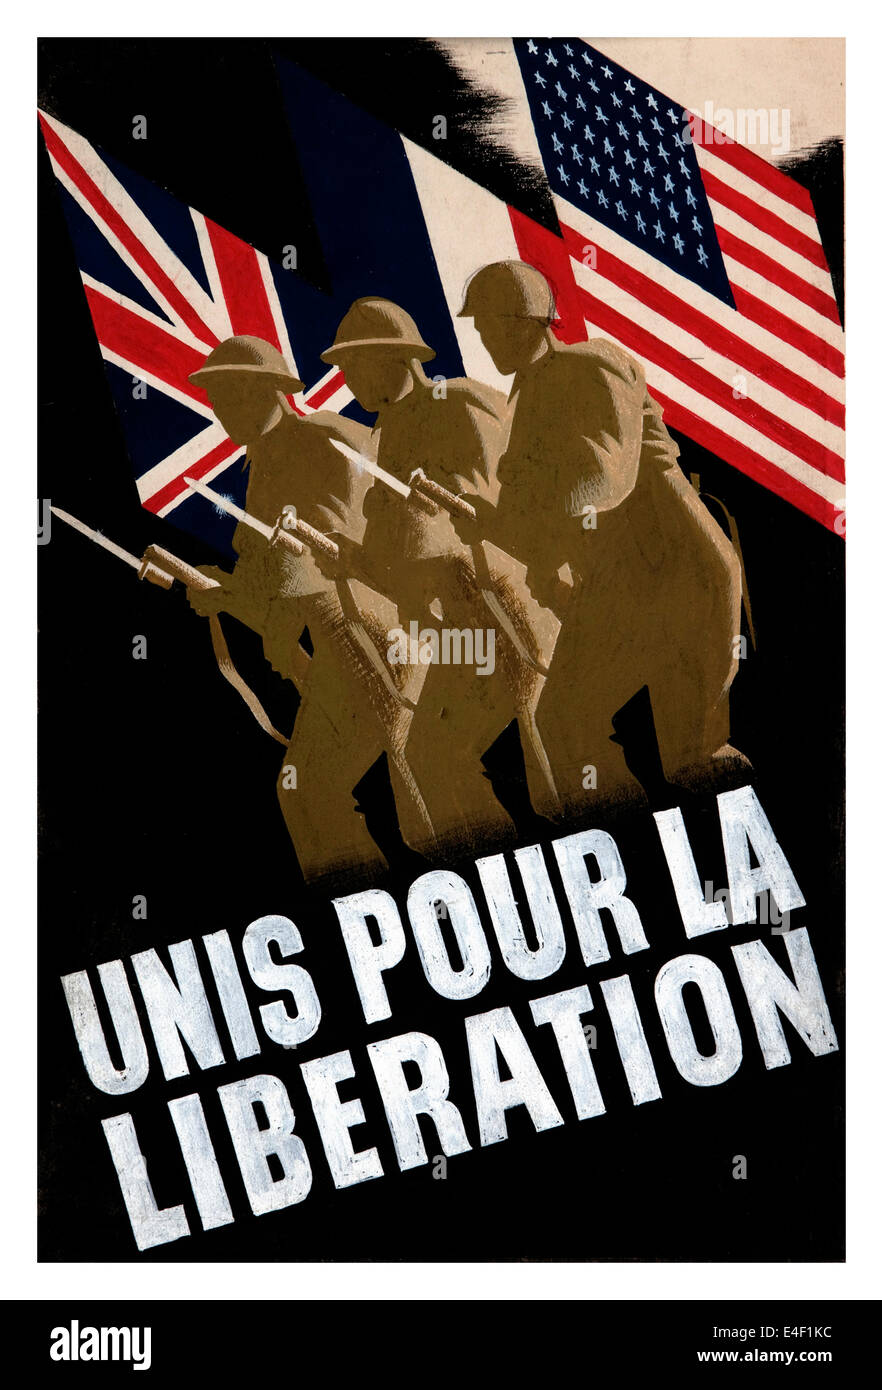 Französischen WW2 Propagandaplakat zeigt Einheit zwischen USA Großbritannien und Frankreich für die Befreiung von der Nazi-Besatzung Stockfoto